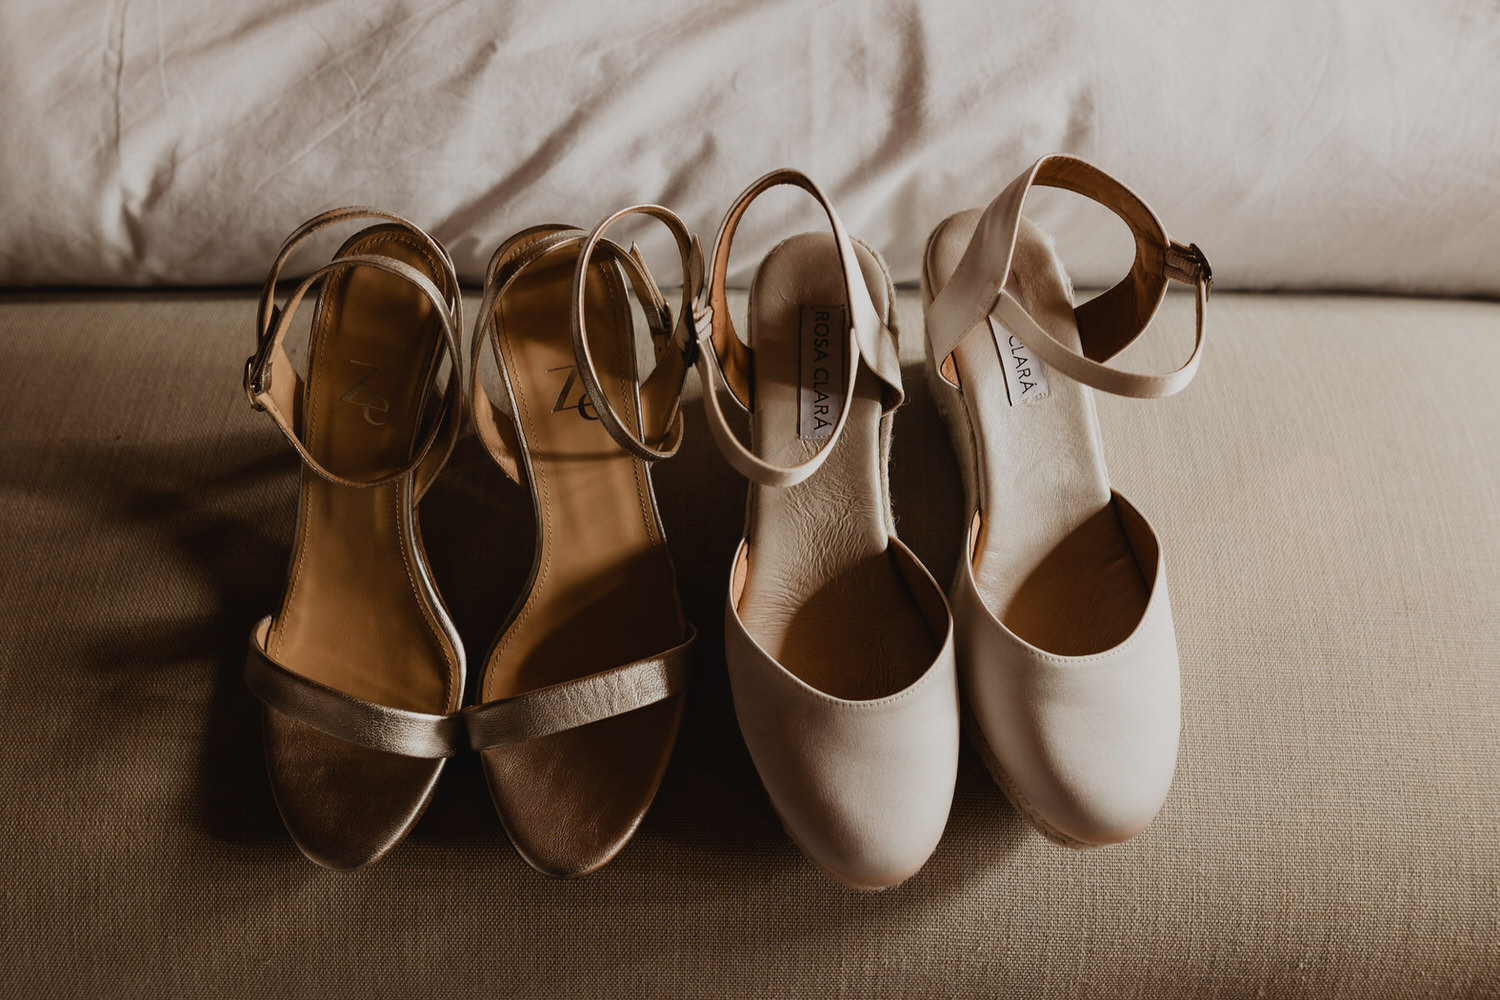 Dos elegantes pares de zapatos para novias de la marca ZeGarcia y Rosa Clará, perfectos para completar cualquier look nupcial. Los zapatos destacan por su diseño sofisticado y delicado. Estos zapatos son ideales para novias que buscan un estilo refinado y femenino en su gran día